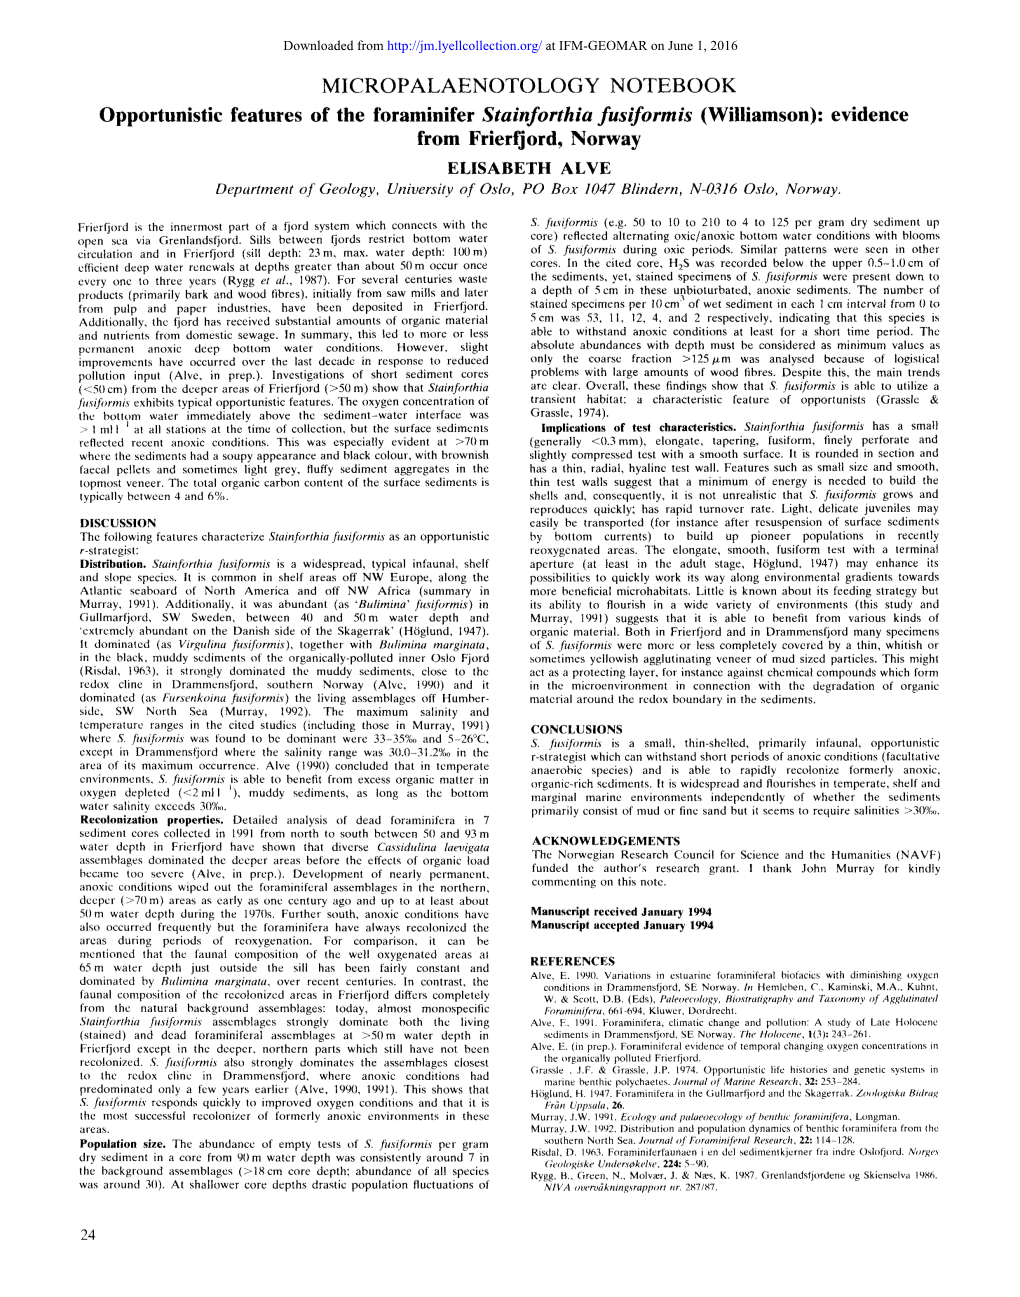 Micropalaenotology Notebook